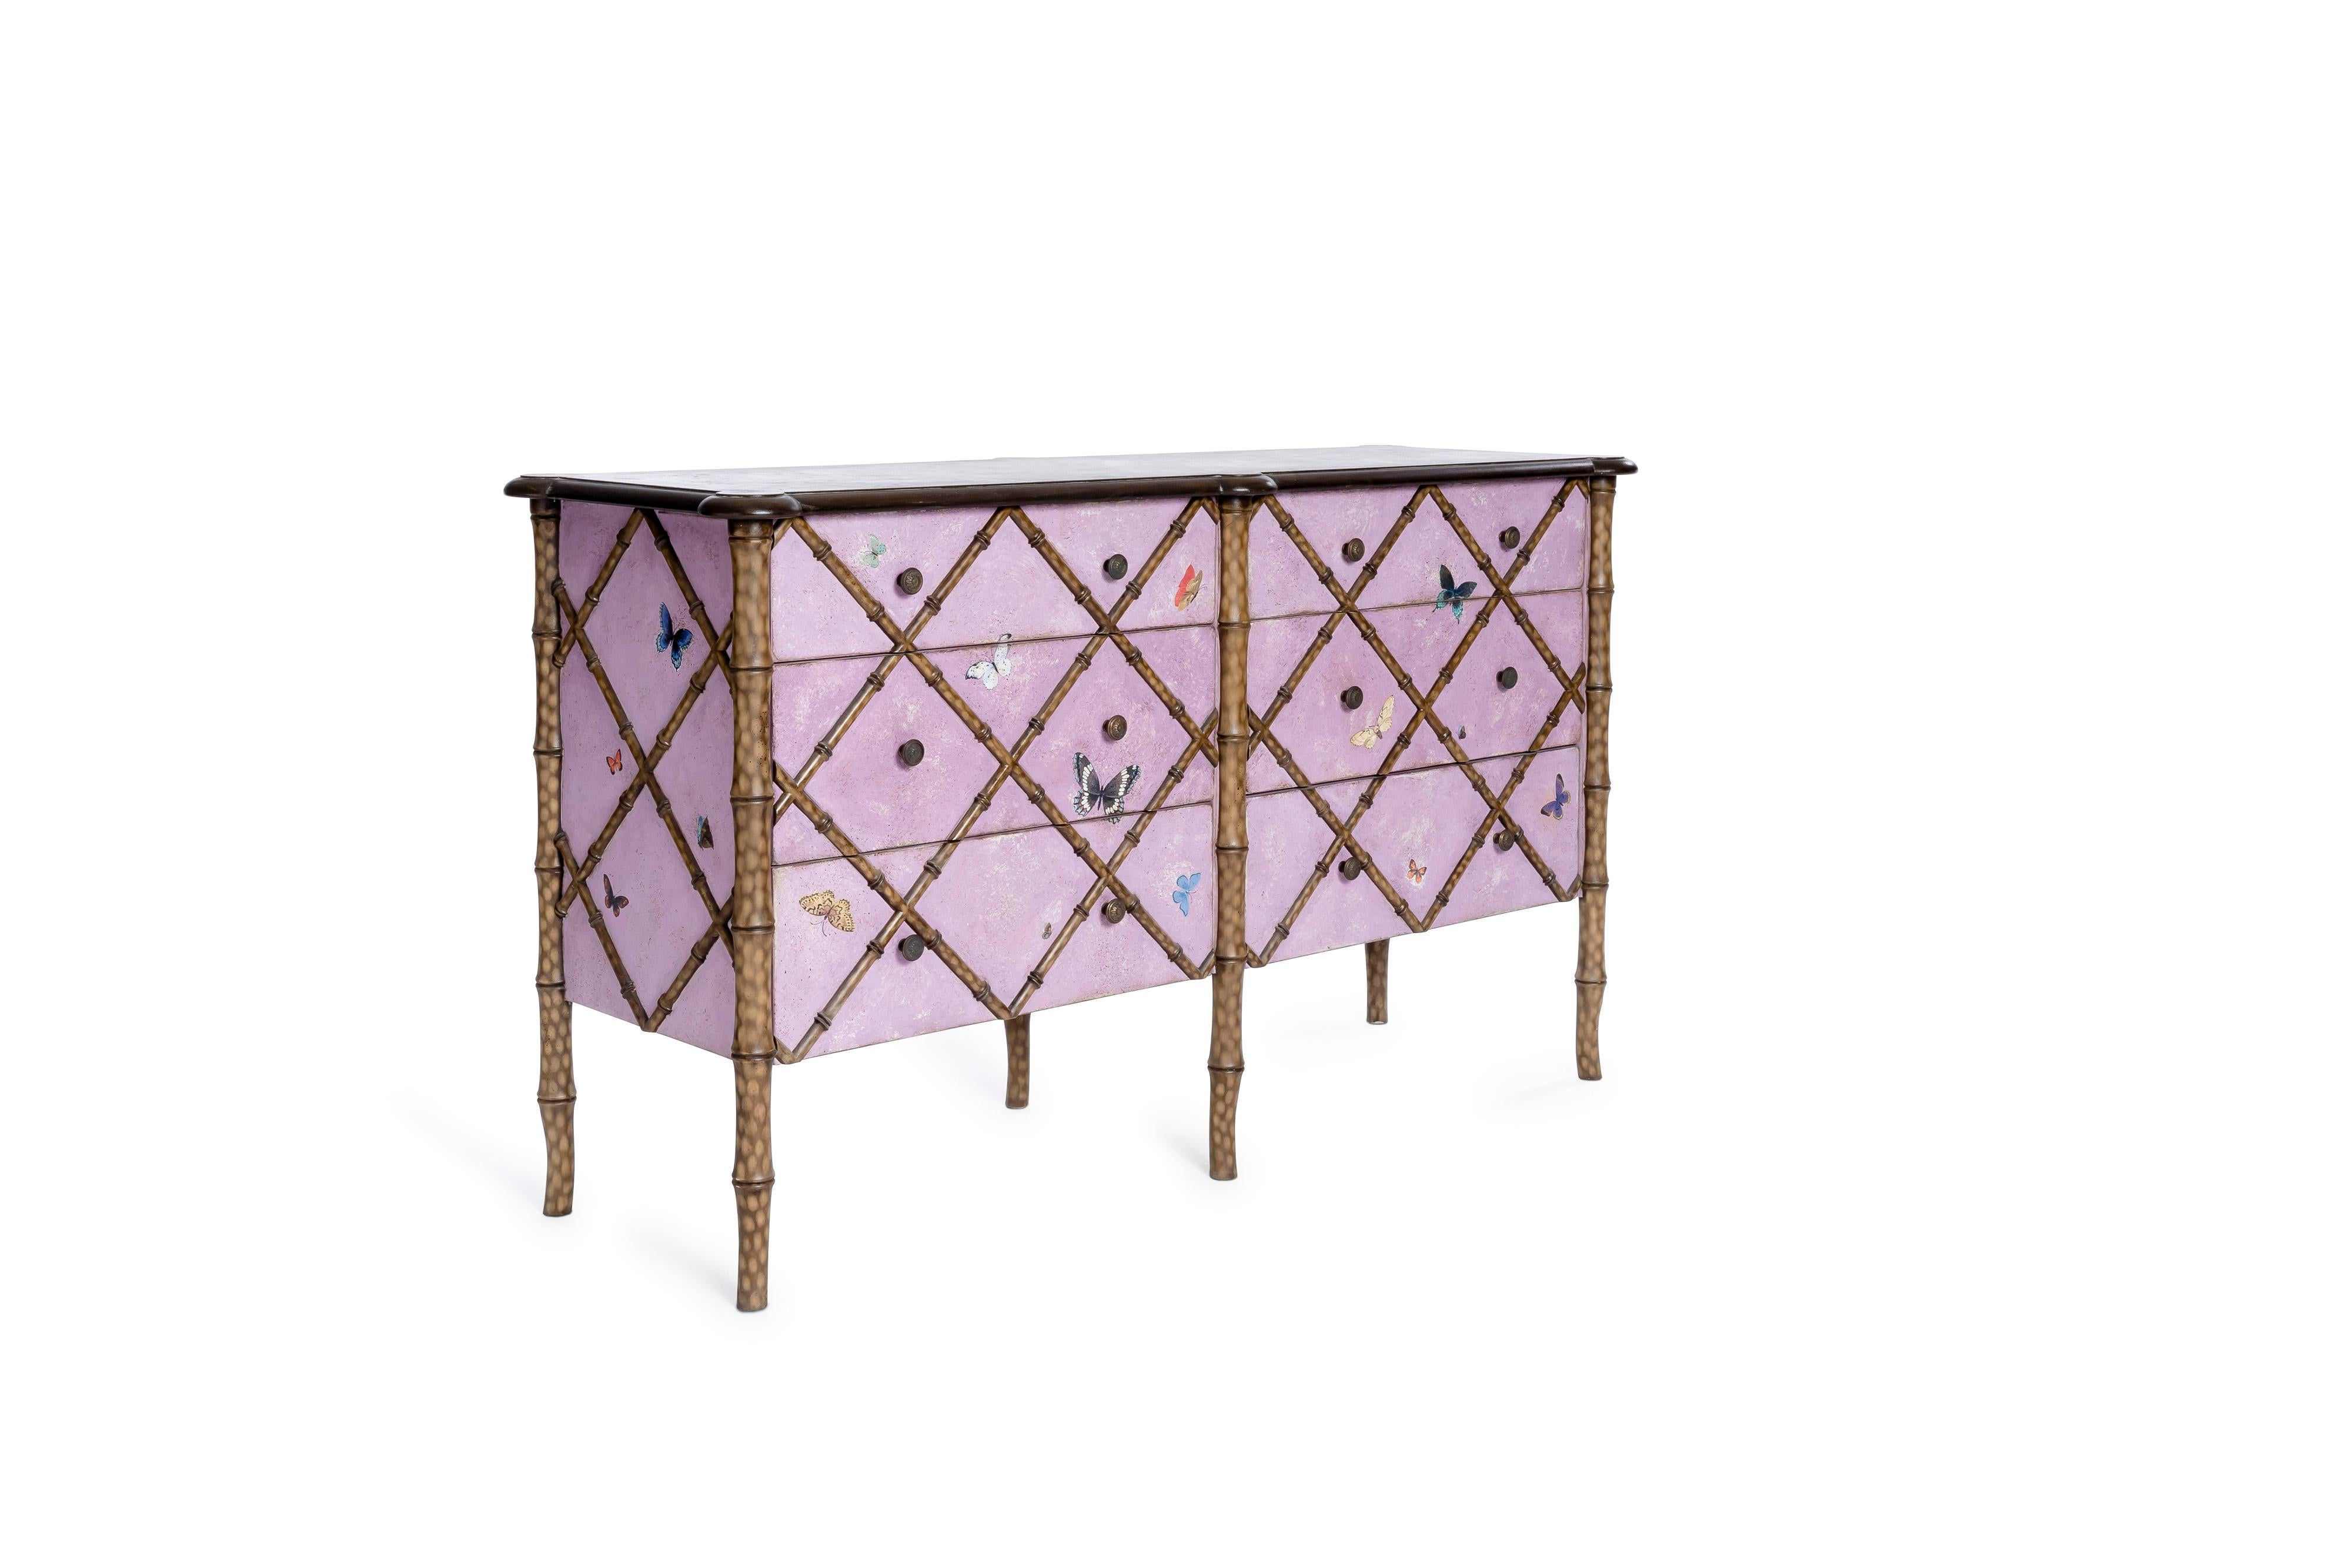 De notre Collection de meubles peints à la main, nous avons le plaisir de vous présenter notre Commode double Fiesole en bambou rose avec décor de papillons. 
Cette pièce éclectique apportera la bonne dose de fantaisie à votre pièce, ainsi que